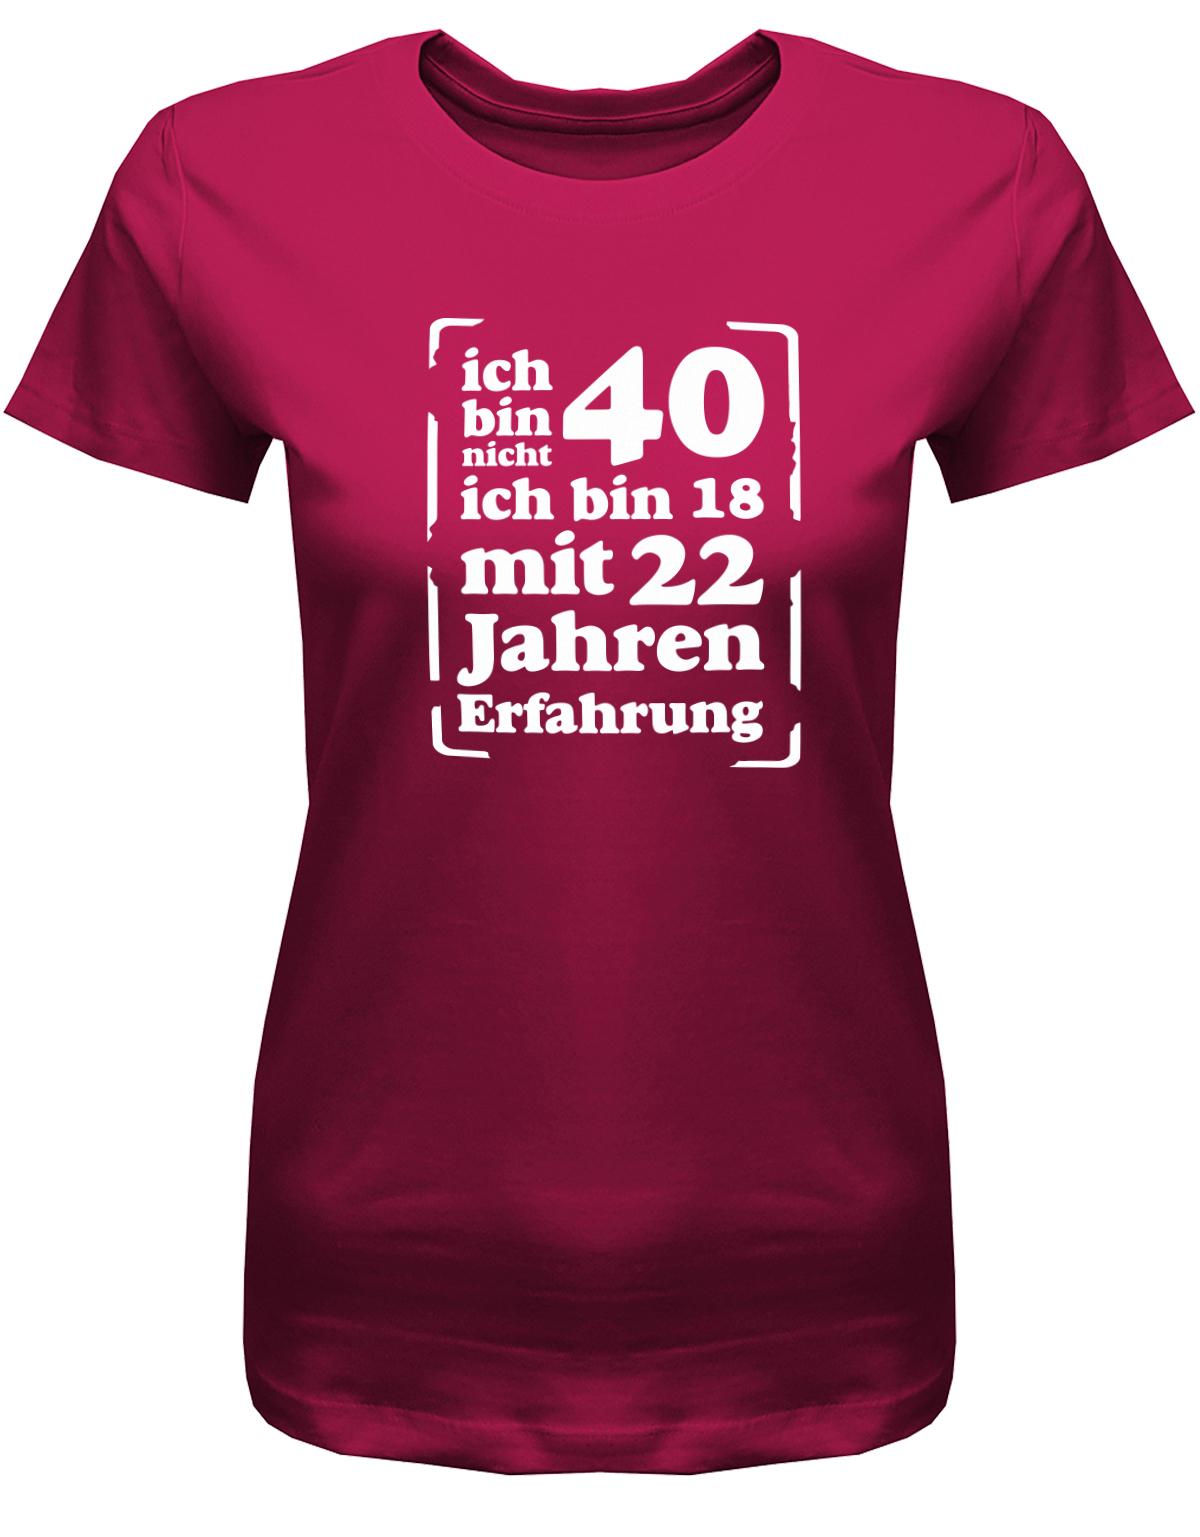 Lustiges T-Shirt zum 40. Geburtstag für die Frau Bedruckt mit Ich bin nicht 40, ich bin 18, mit 32 Jahren Erfahrung. Sorbet